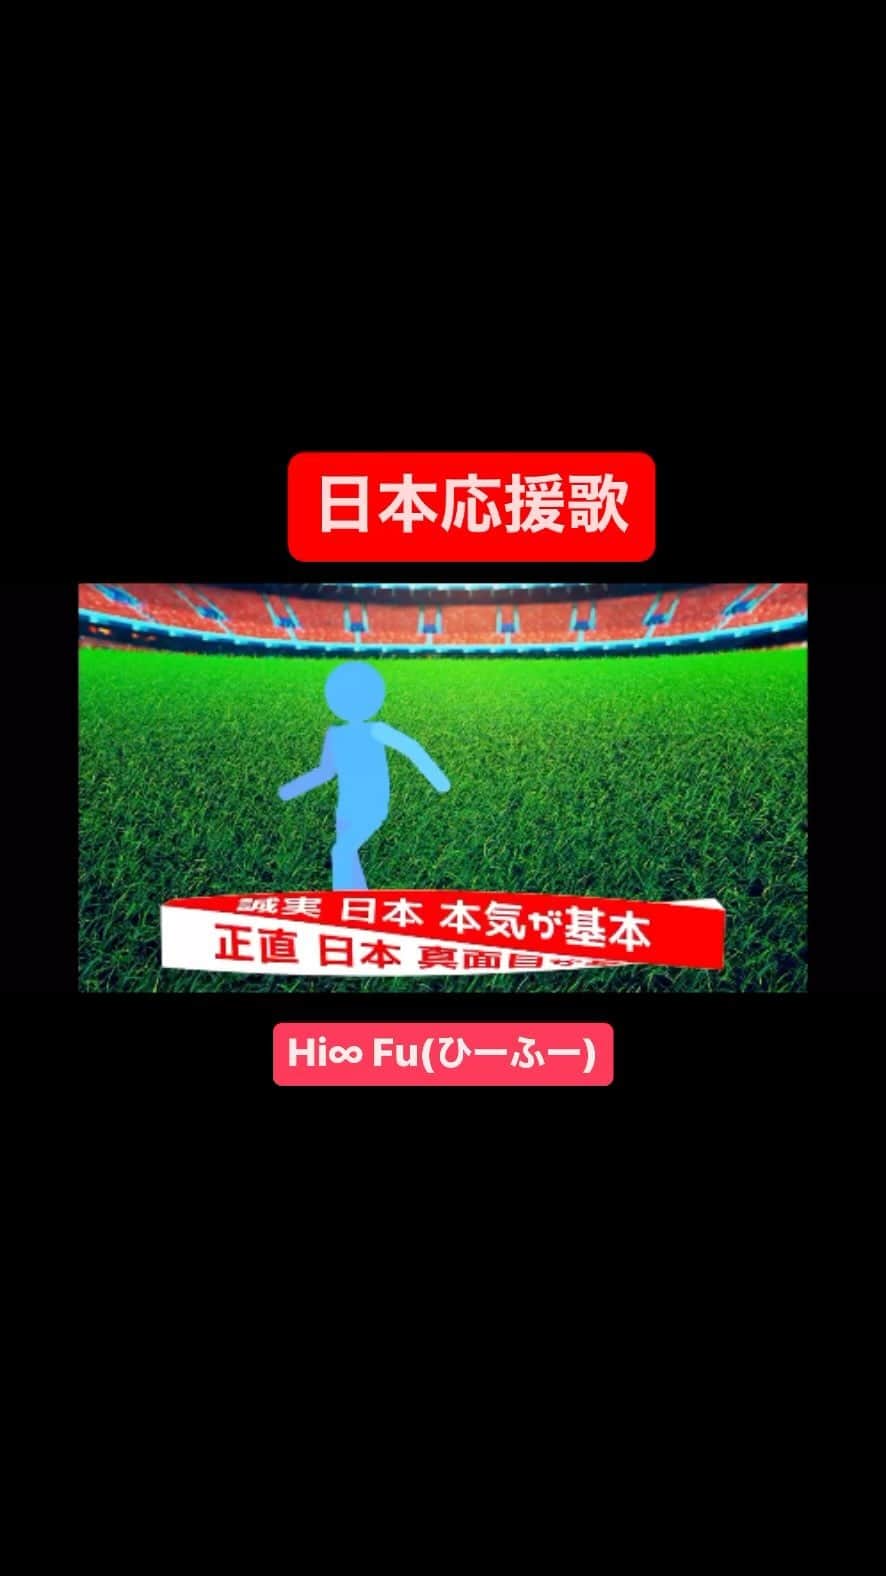 アジアツインズ光と風Hi-Fuのインスタグラム：「双子シンガーソングライターHi∞Fu(ひーふー)です。 他の双子あるある▷ @hifu_twins   私たちはこの歌で日本を応援します！#日本応援 #japan #応援歌 #twins #hifu #ひーふー #双子 #サッカー #fifaworldcup2022 #がんばれニッポン  ∞-------------------------------∞ このアカウントでは、 双子さん、双子ママさん、双子に興味のある方 ひーふーのファンの方にも楽しんで頂けるような 双子あるあるを投稿をしてます。  フォロー&コメント大歓迎♪ ▷ @hifu_twins  応援よろしくお願いします🤲 ∞-------------------------------∞」